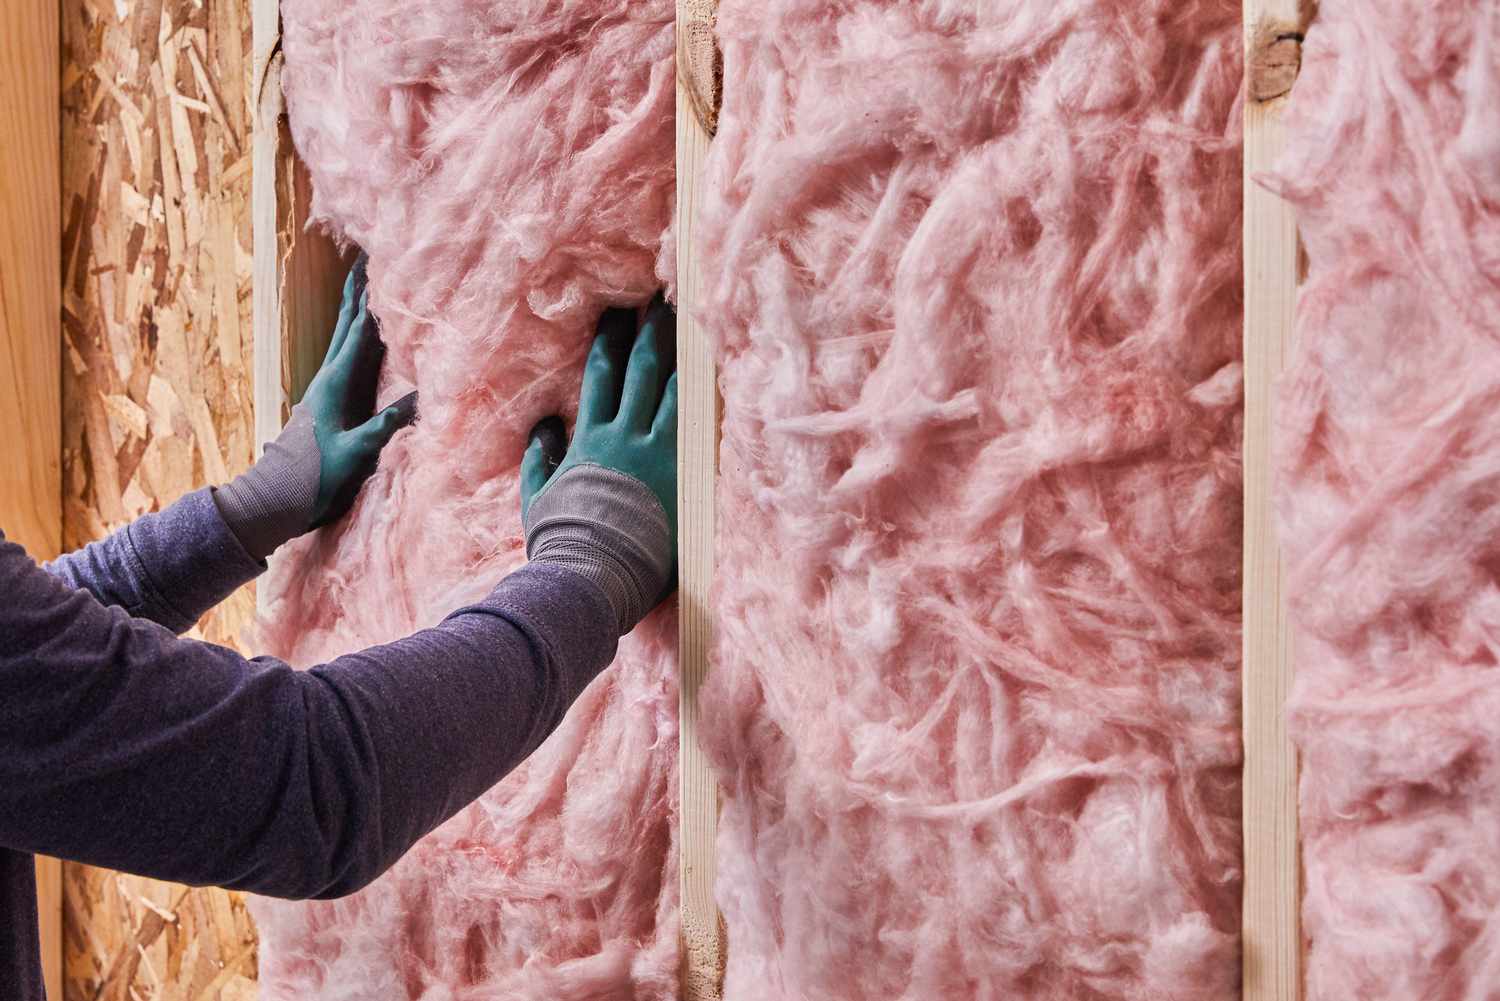 Fiberglass insulation air barrier between wall cavities